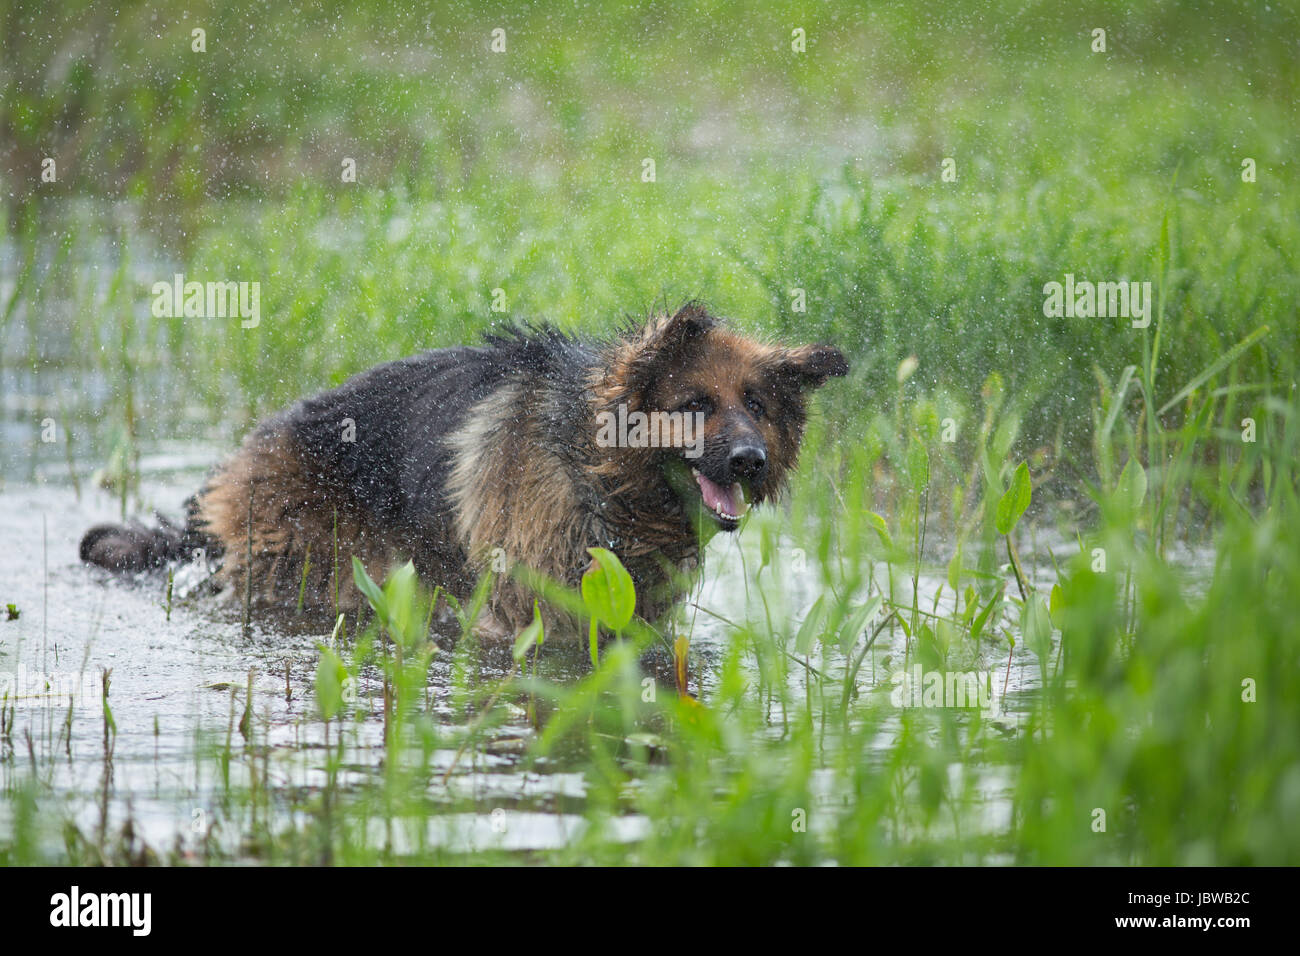 German shepherd dog shaking off water in lake Stock Photo